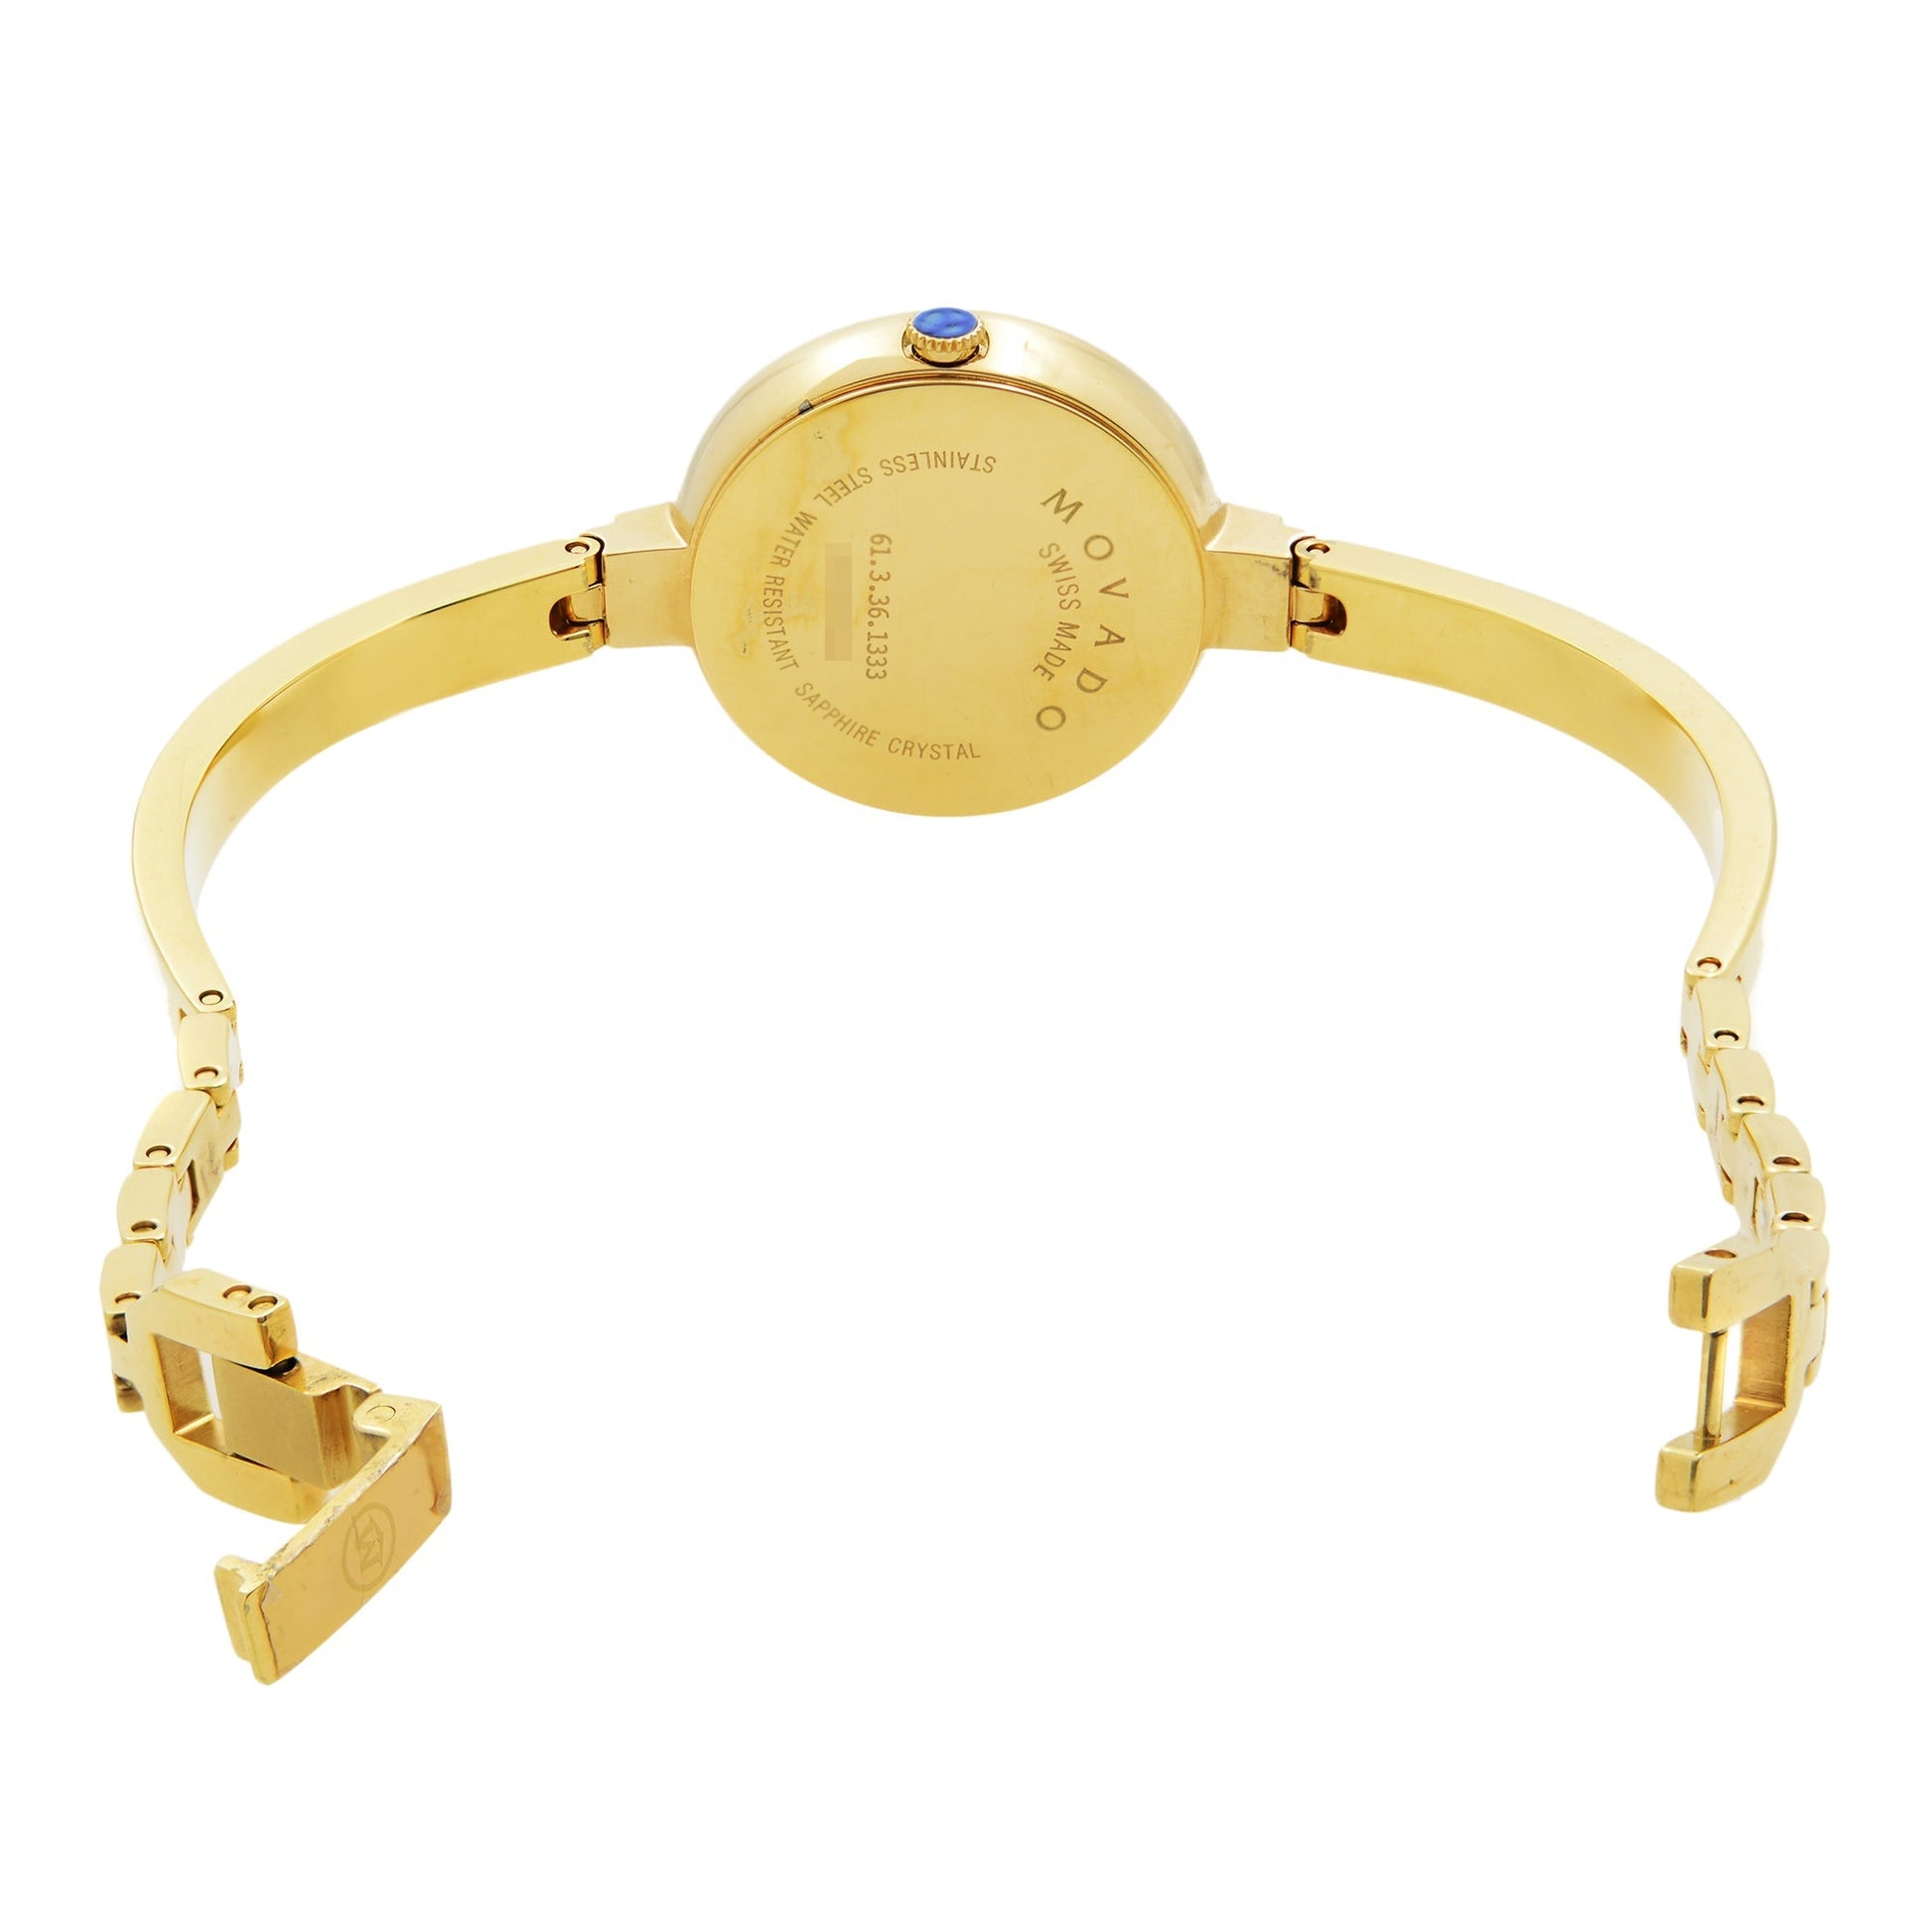 Movado Bela 25mm Black Dial Gold Steel Strap Watch For Women - 0606999